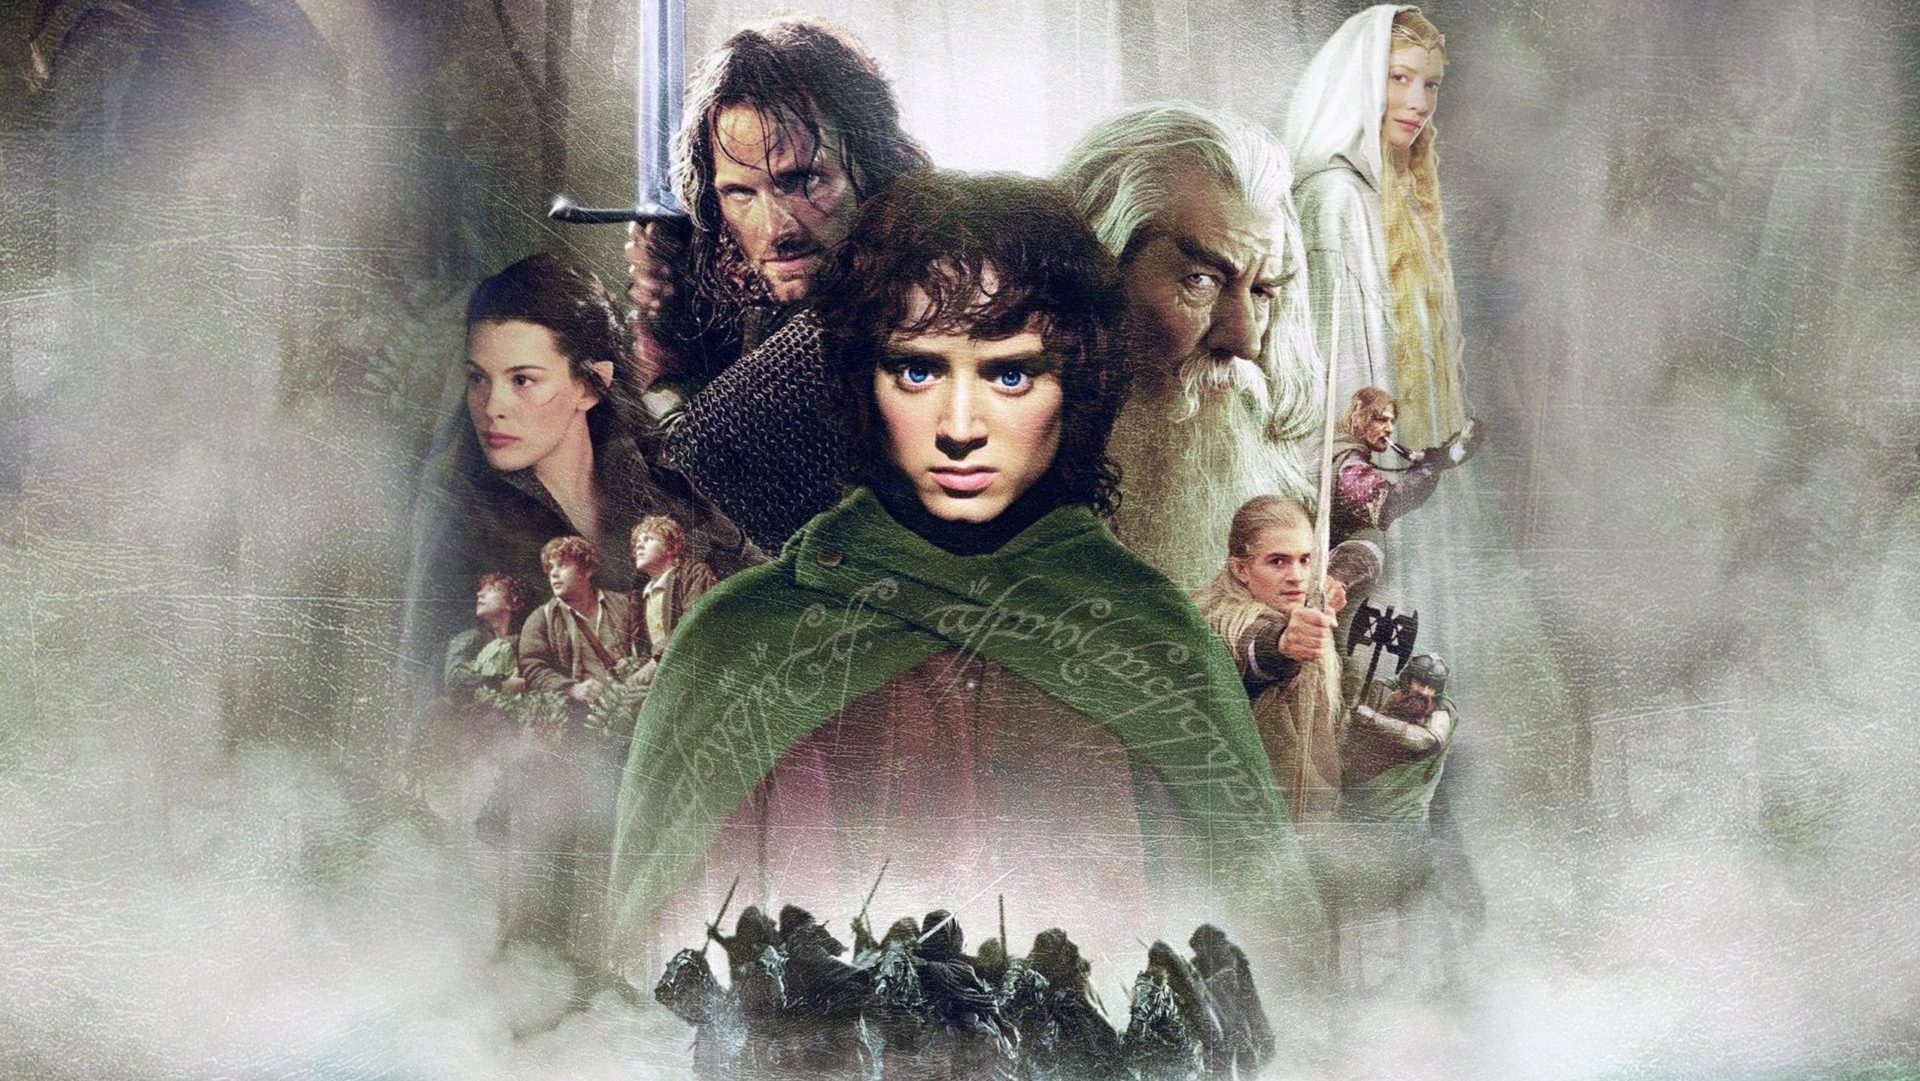 Frodo assassino: revelado o macabro final original de O Senhor dos Anéis